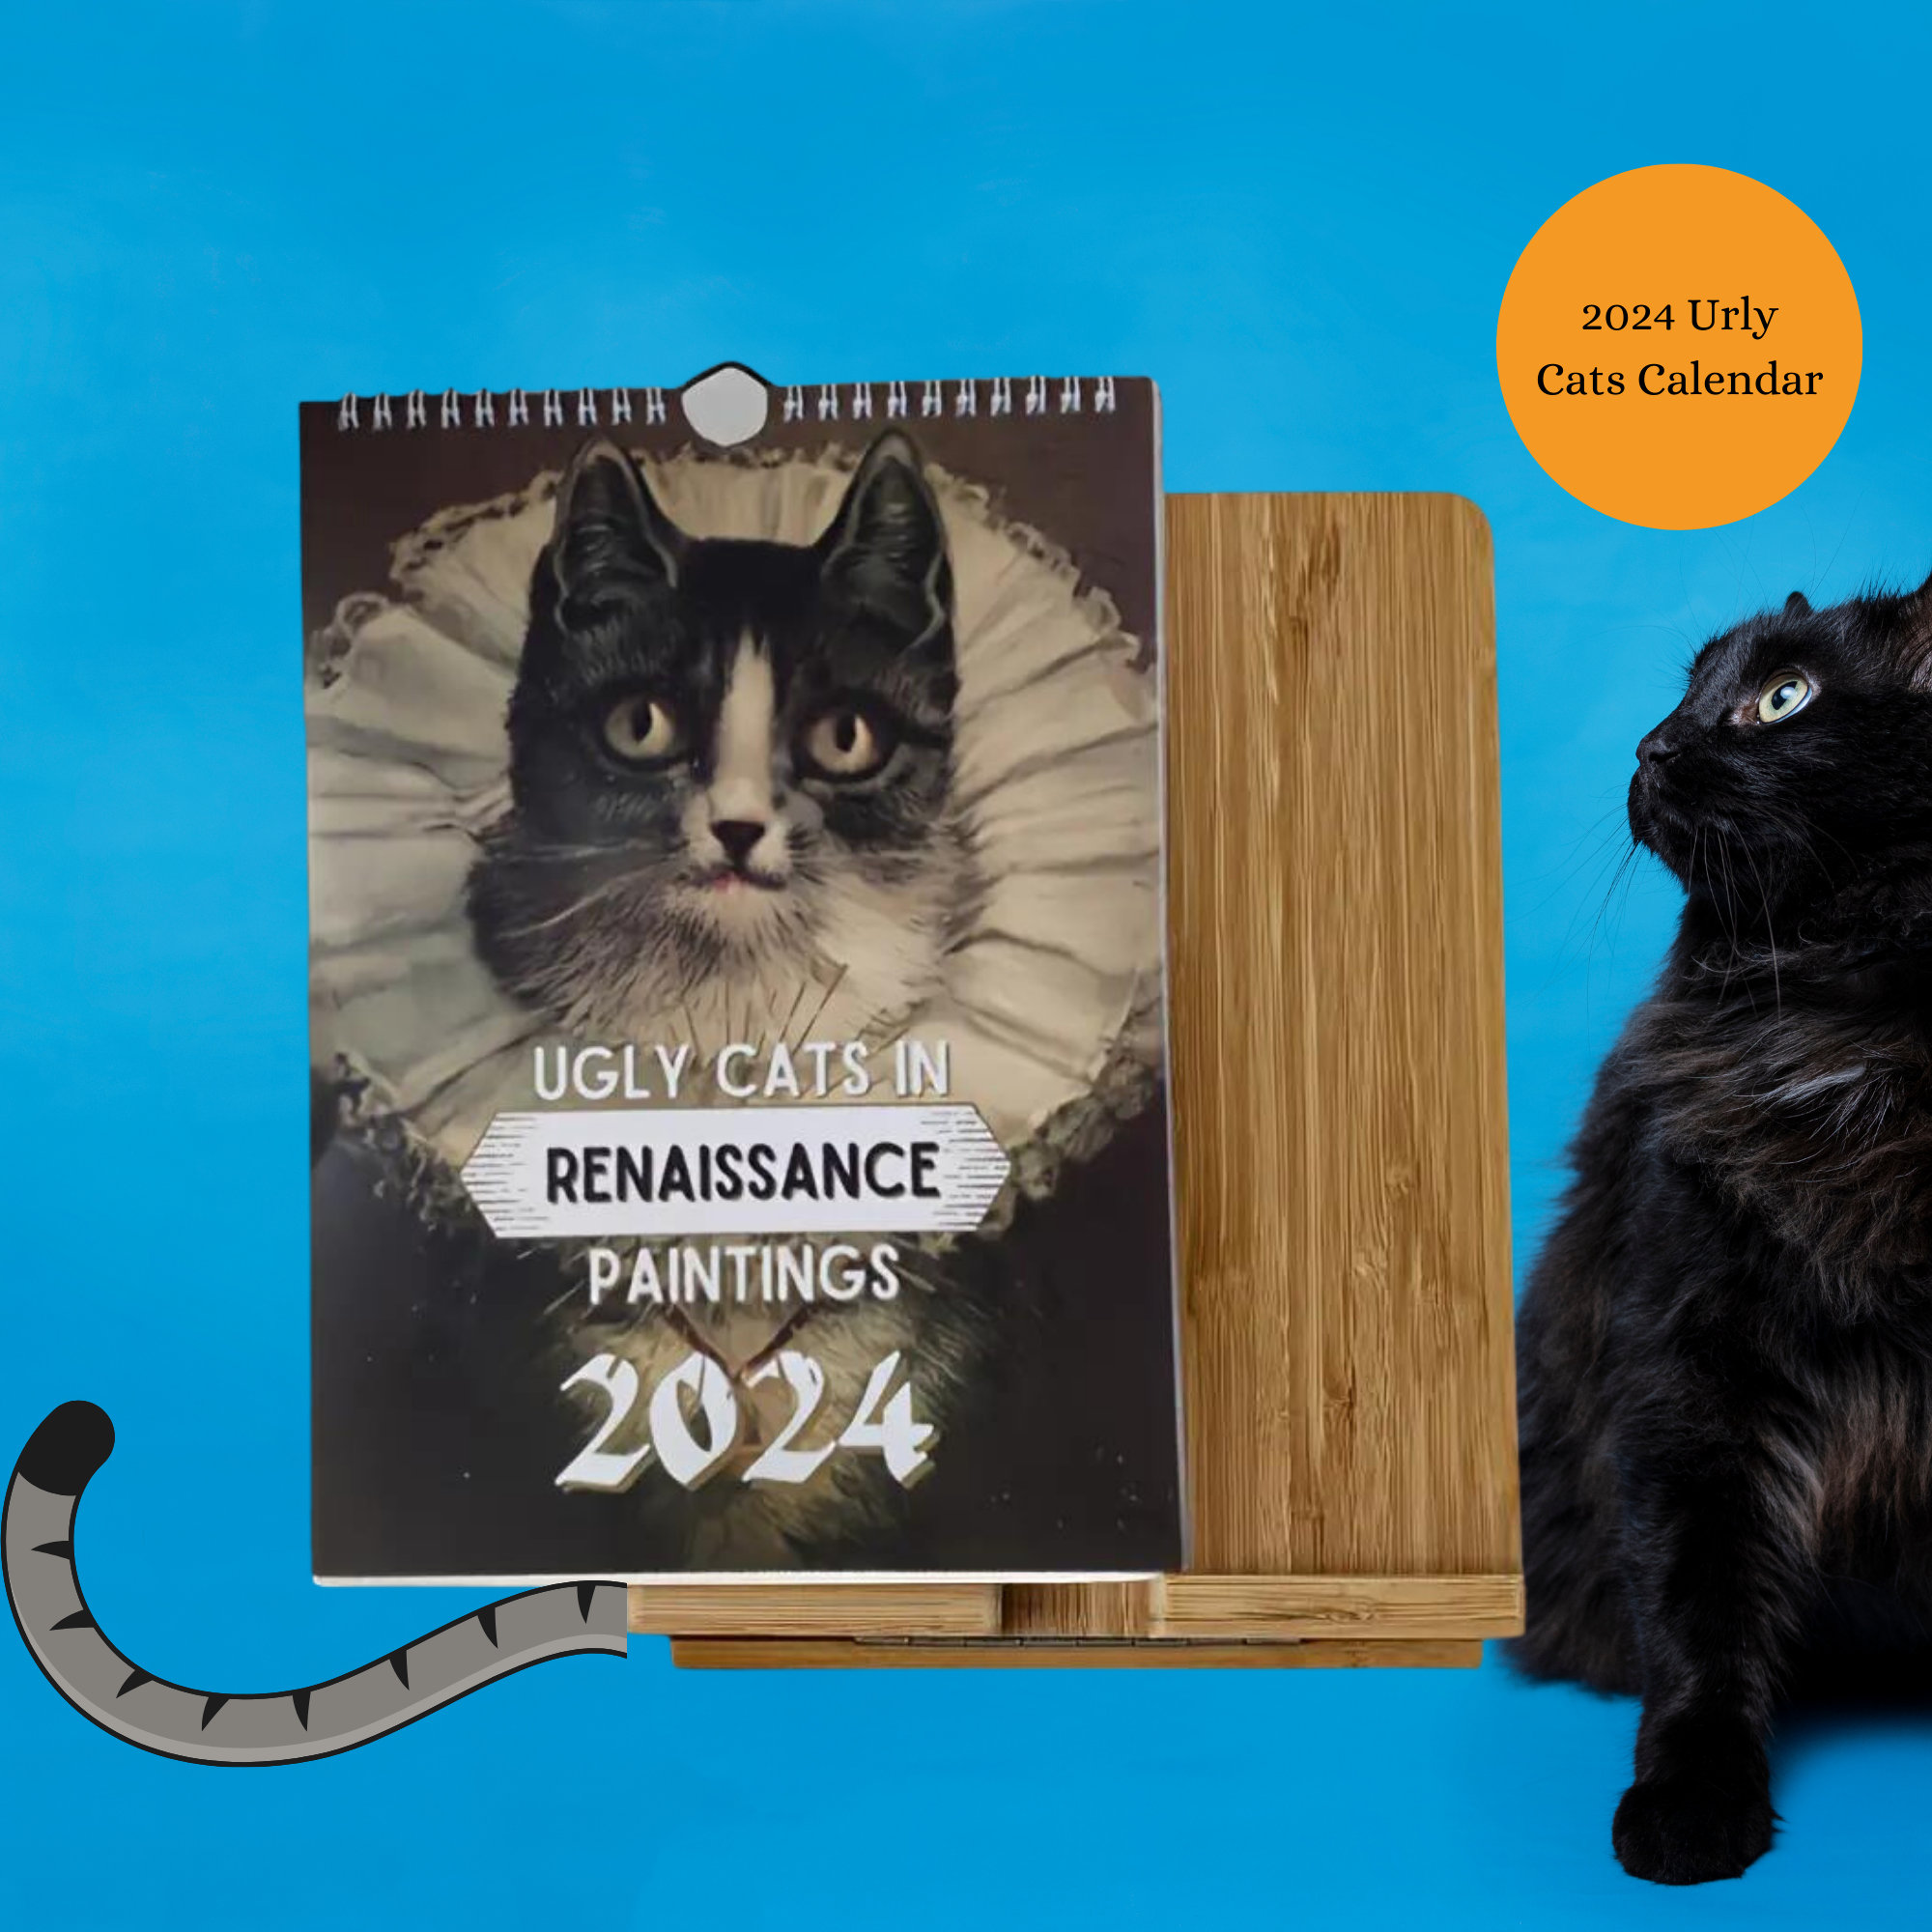 Pierre Bonnard long legs cat, Cursed Cat Meme | iPad Case & Skin